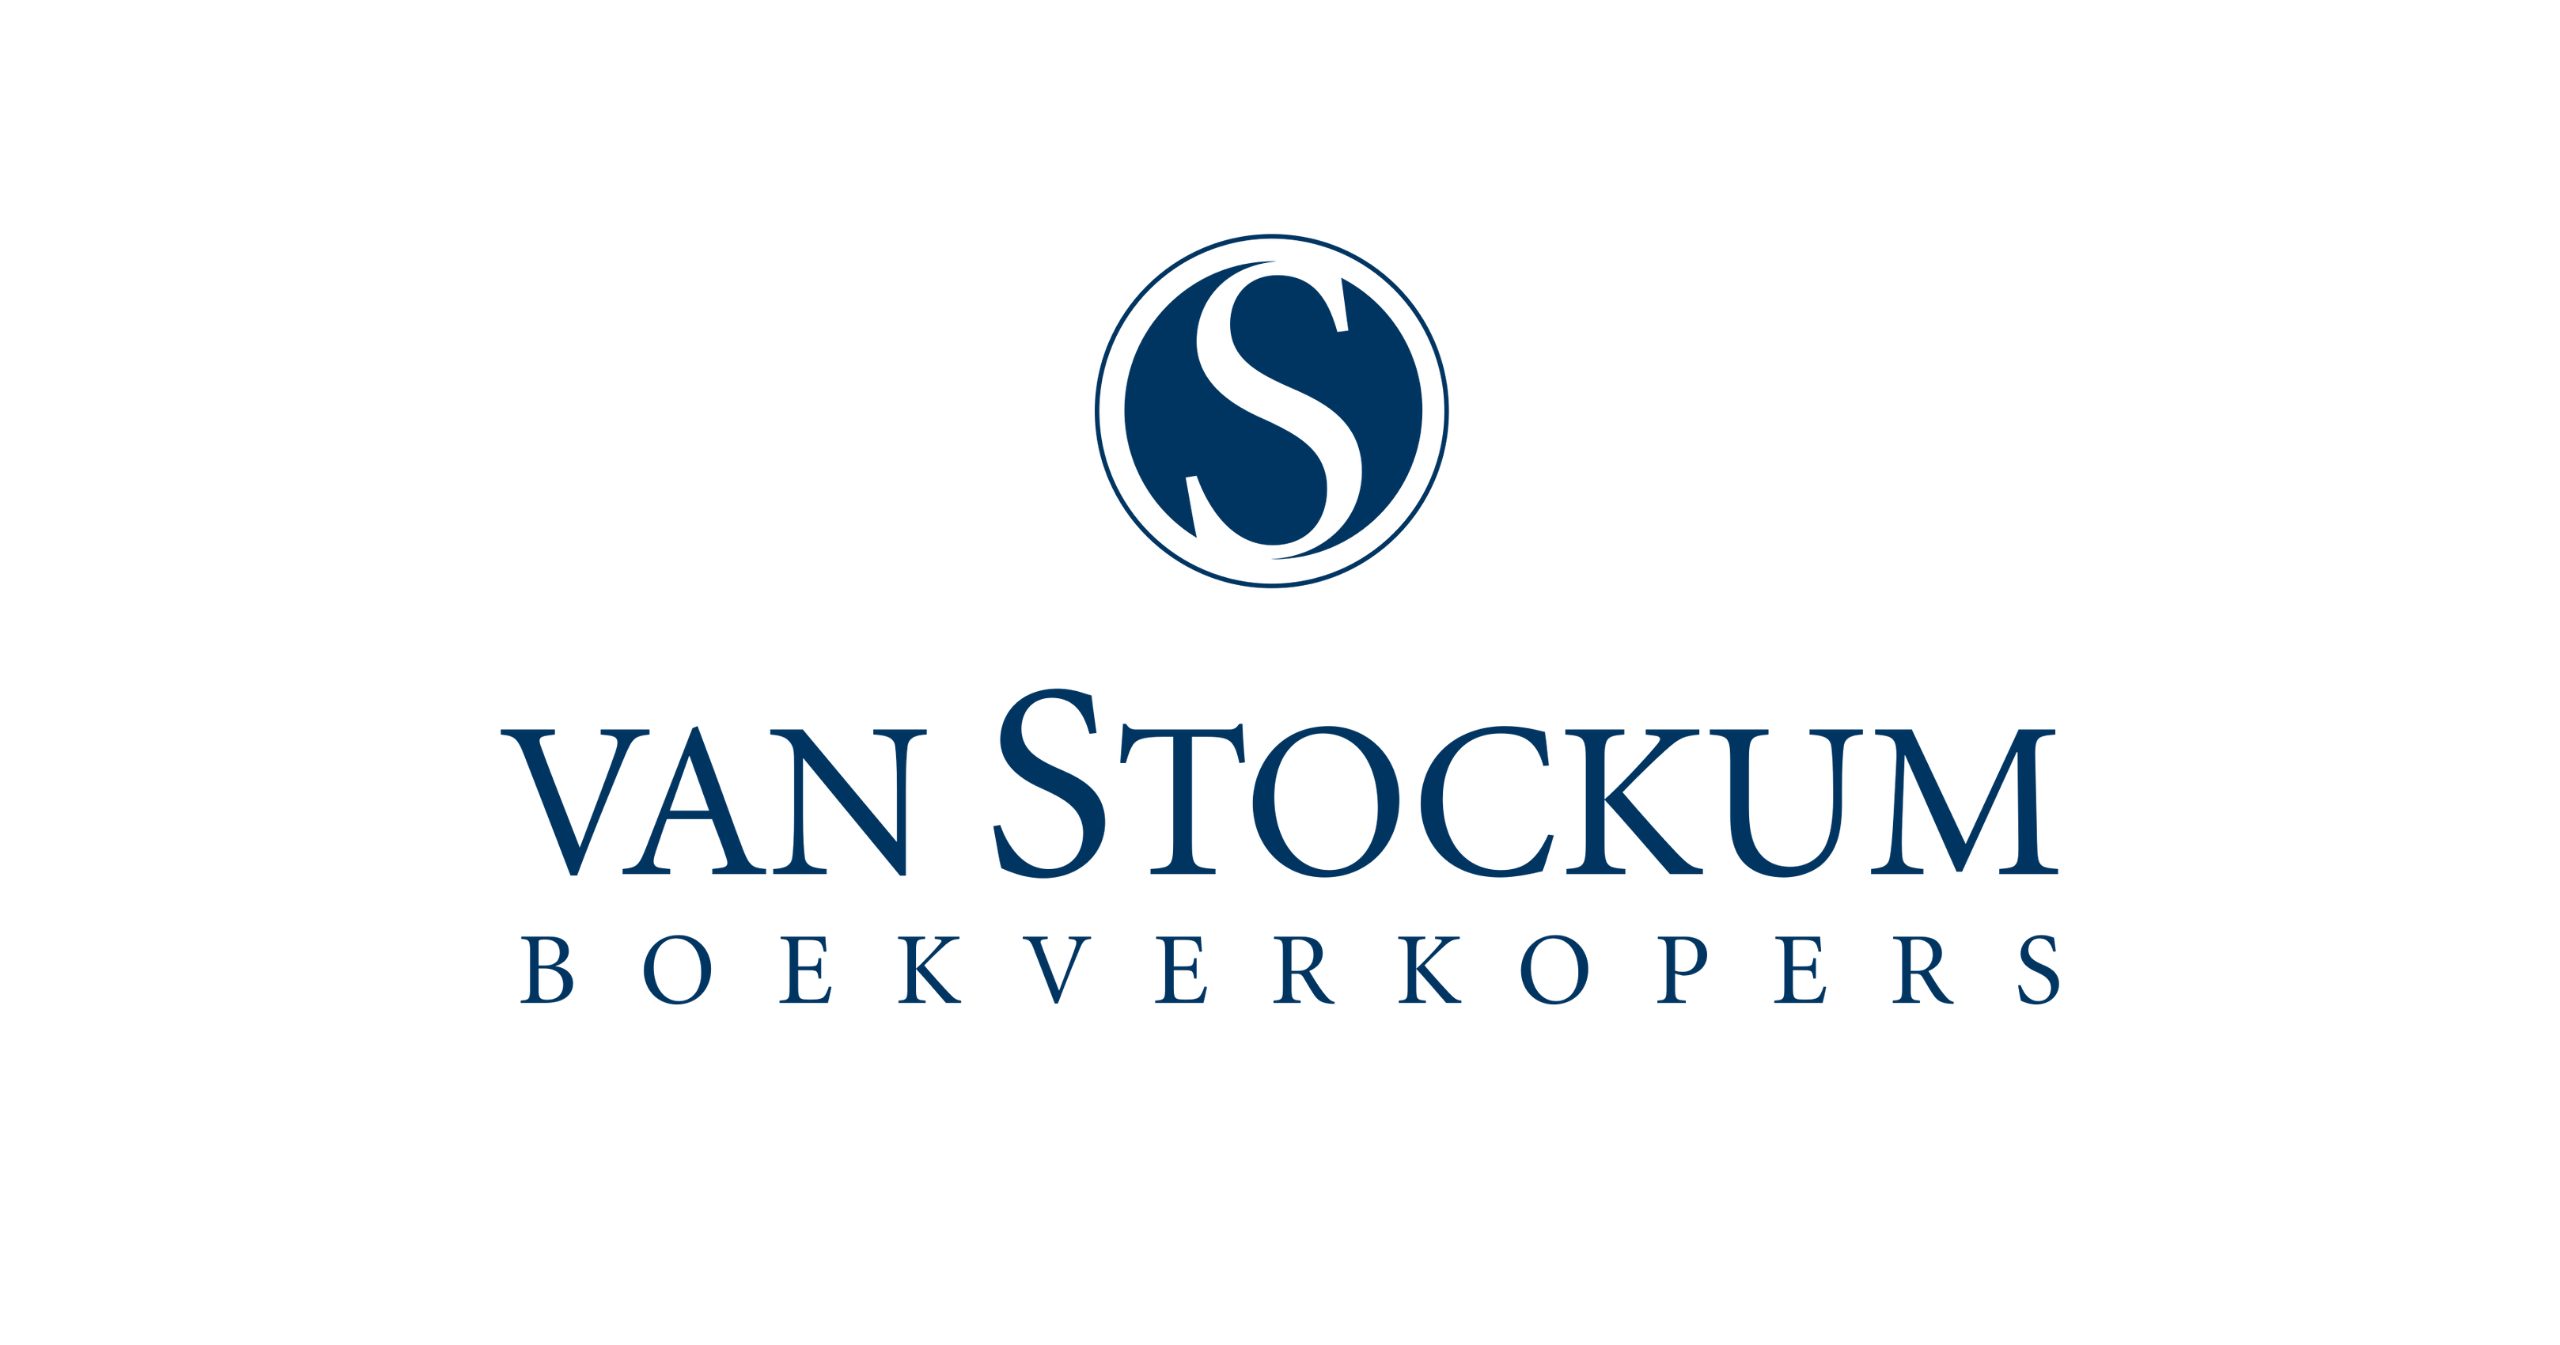 Van Stockum Boekverkopers